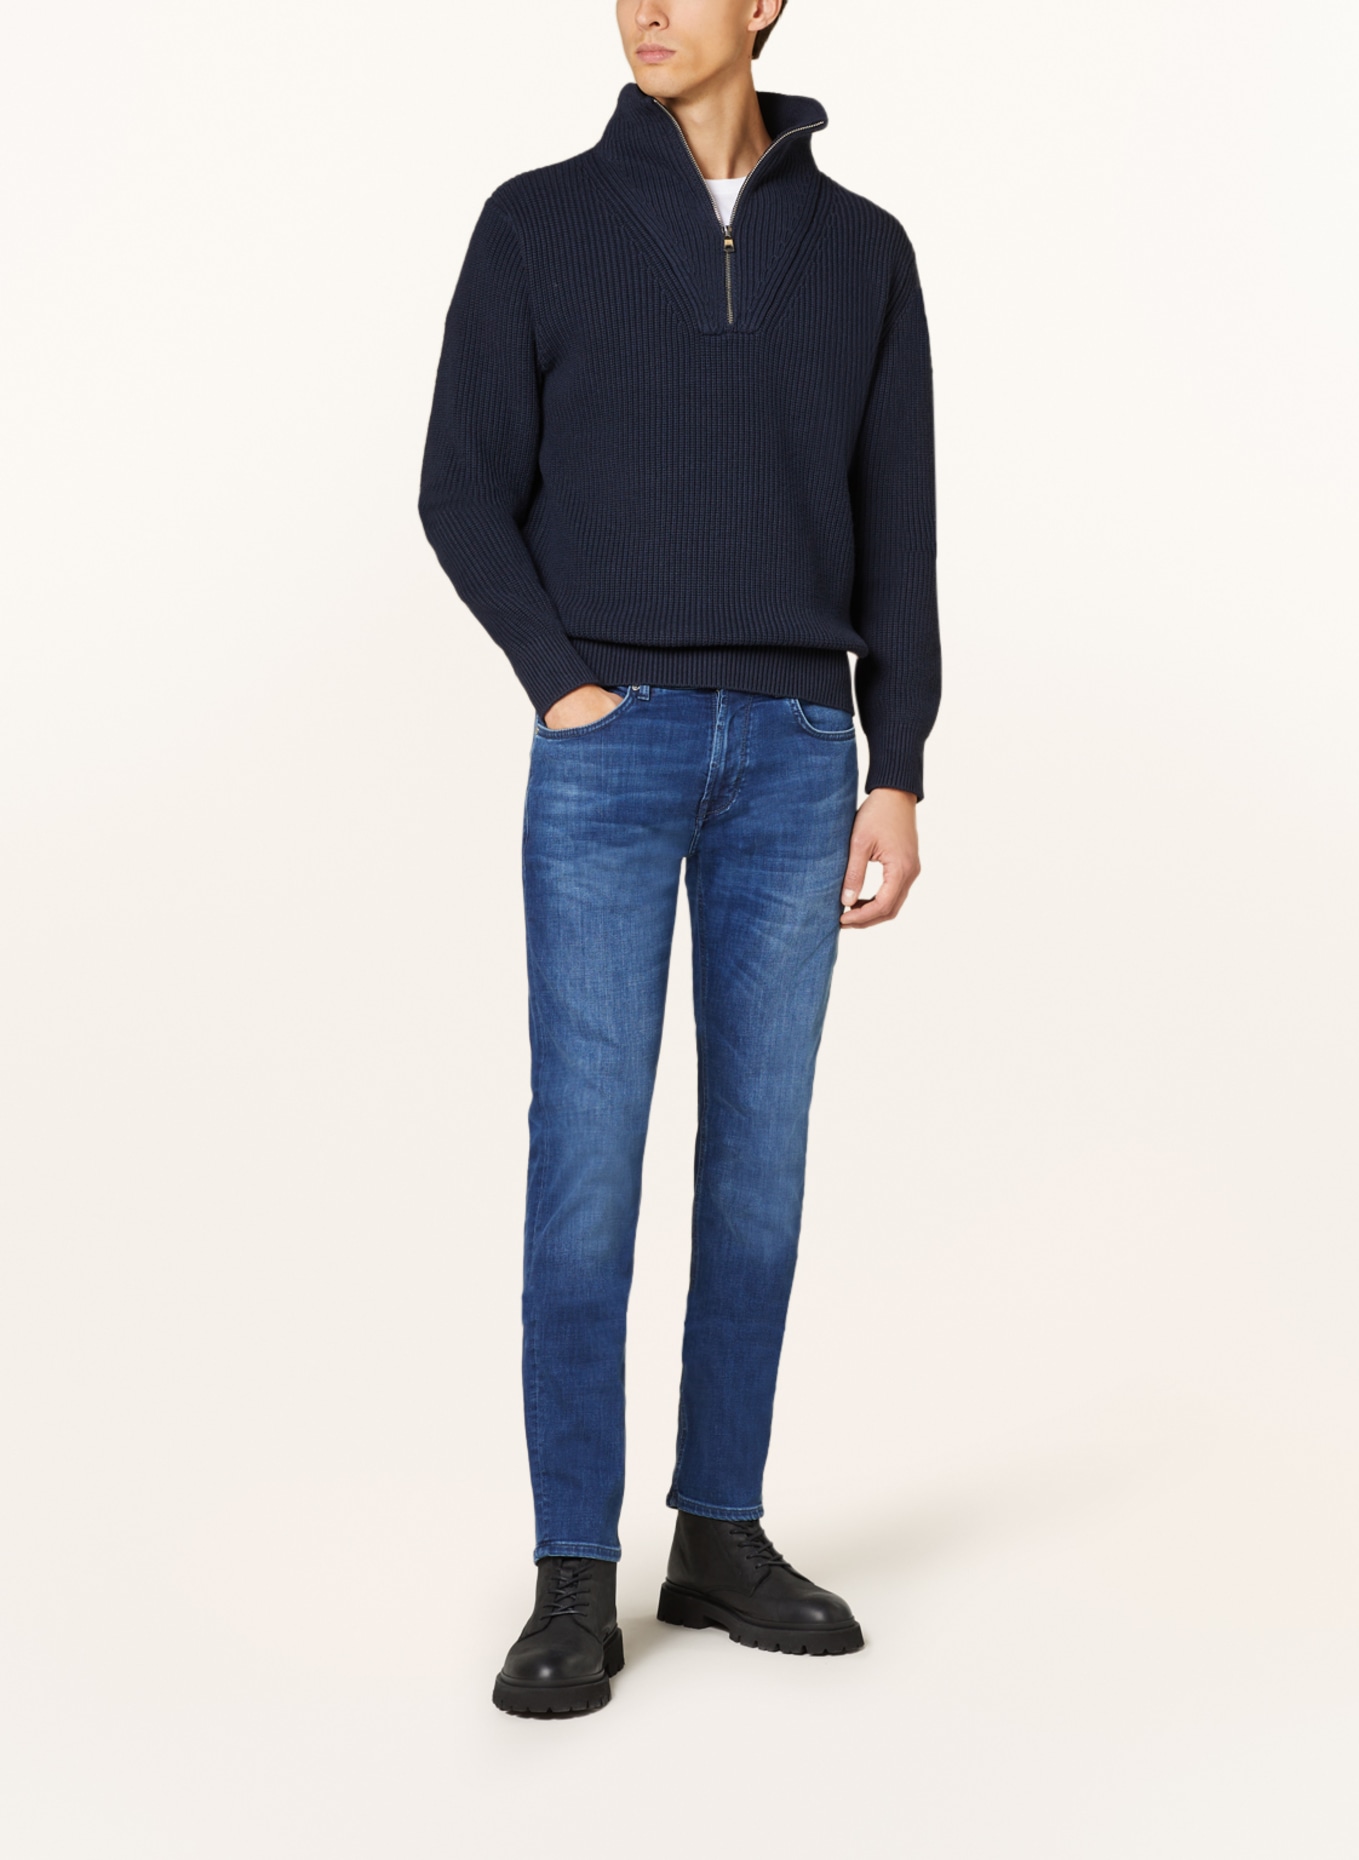 BALDESSARINI Jeans regular fit, Color: 6825 blue used whisker (Image 2)